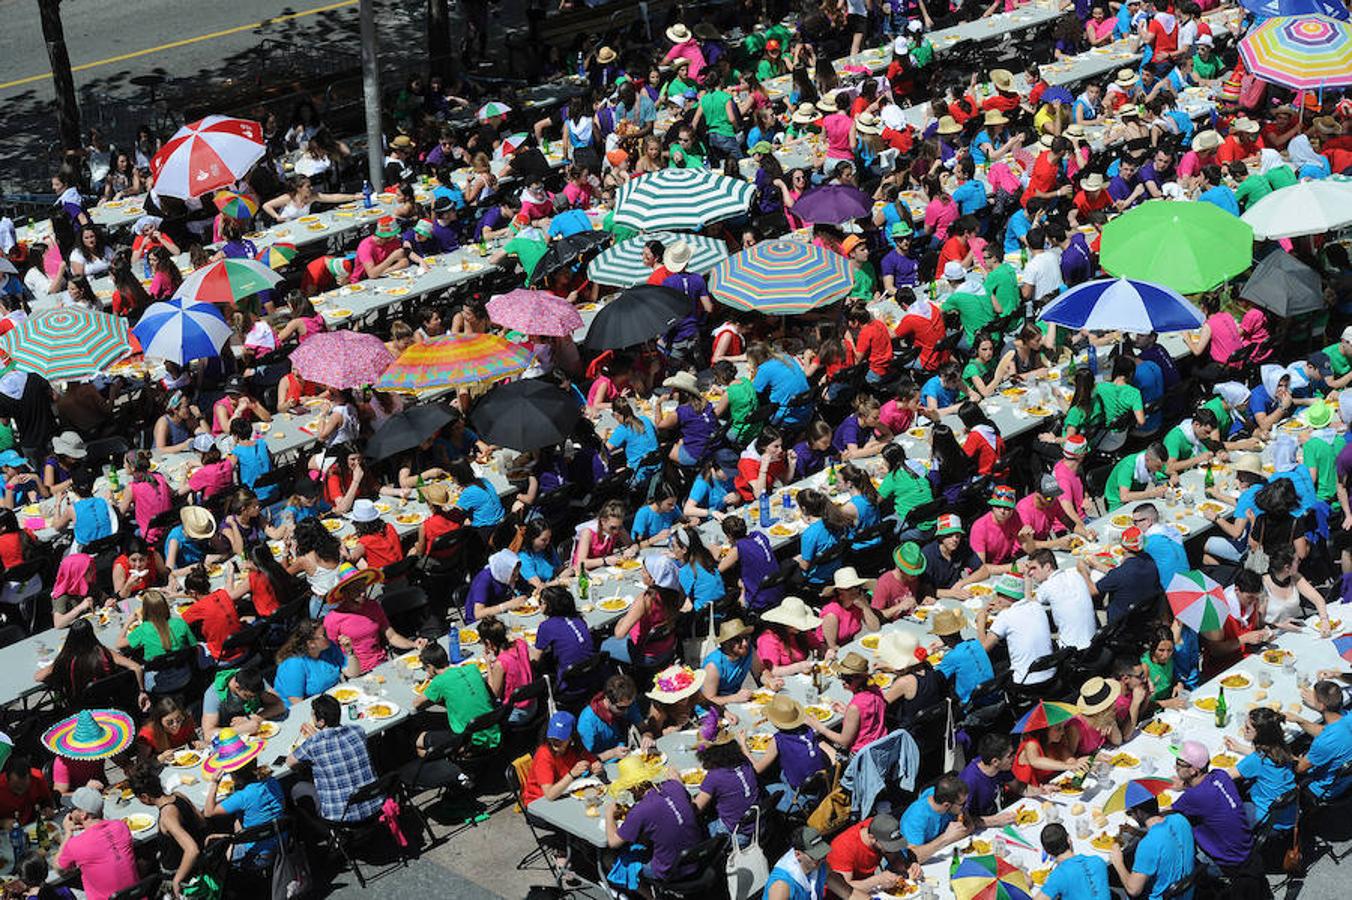 En Eibar arrancaron sus Sanjuanes, con actividades a lo largo de todo el día, incluido el txupinazo que dio comienzo a las fiestas